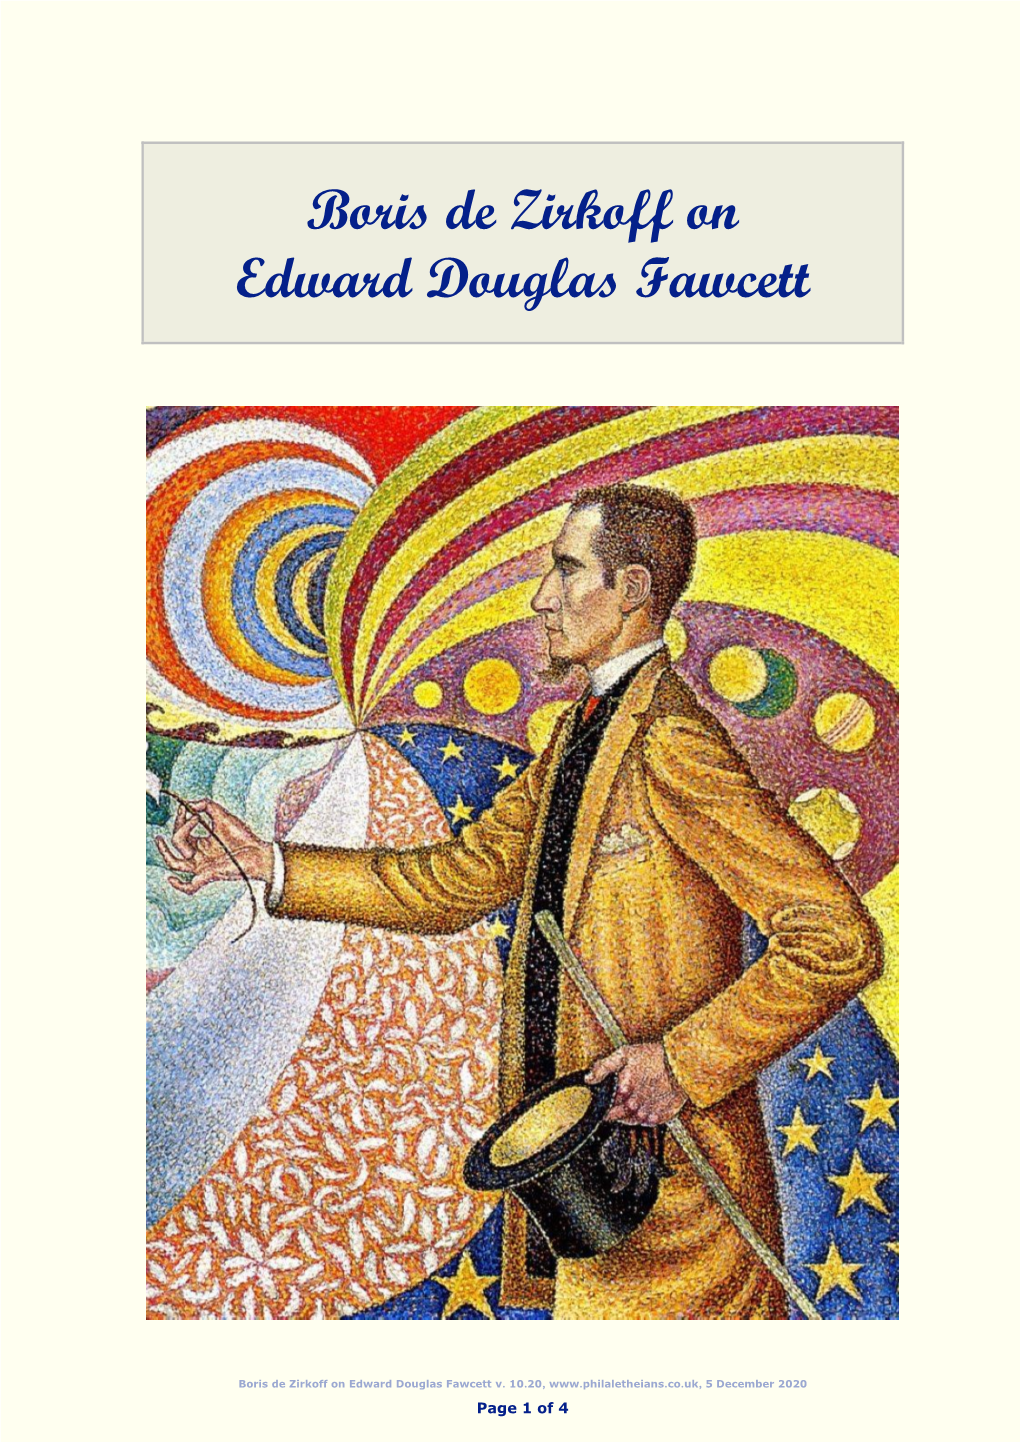 De Zirkoff on Edward Douglas Fawcett